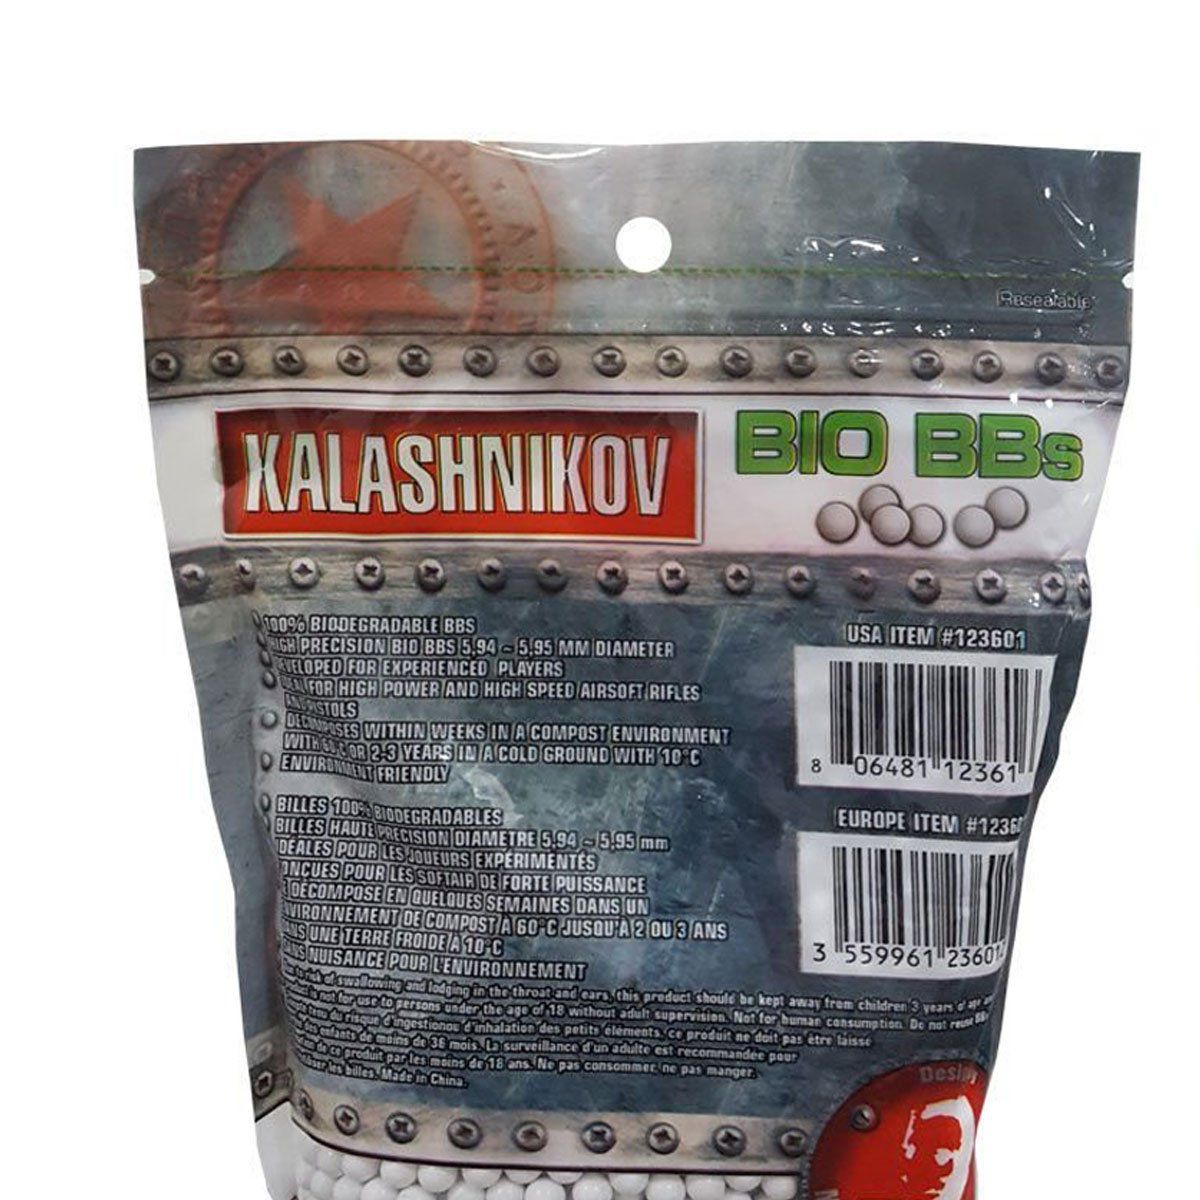 Esferas Plásticas BBs Kalashnikov Bio 6mm 0,25g 3200un